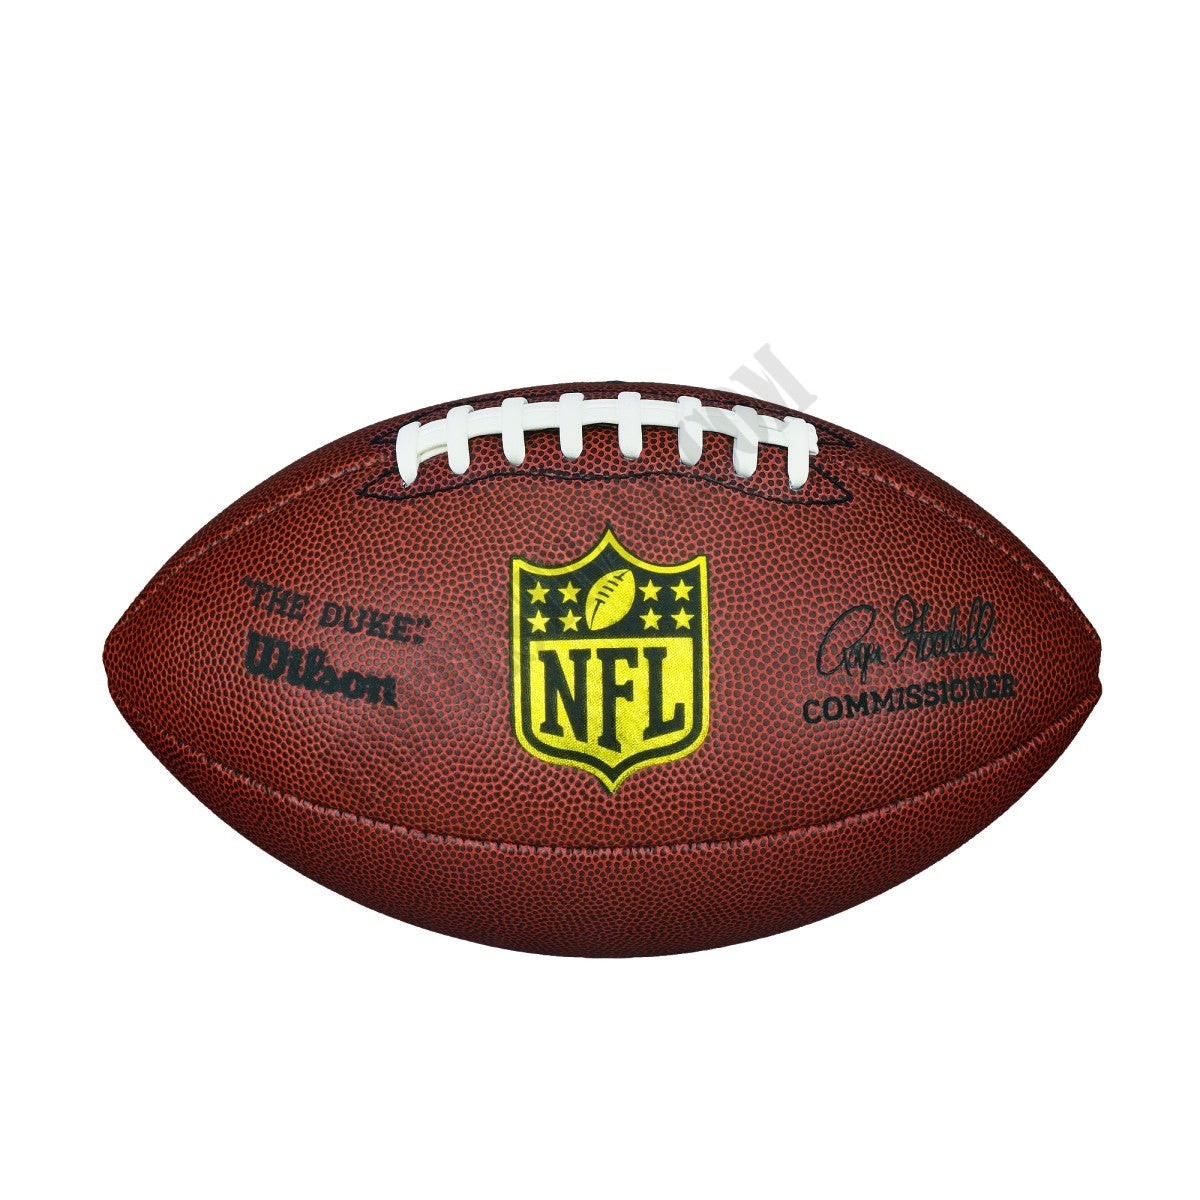 NFL Duke Replica Composite Football - Official ● Wilson Promotions - NFL Duke Replica Composite Football - Official ● Wilson Promotions